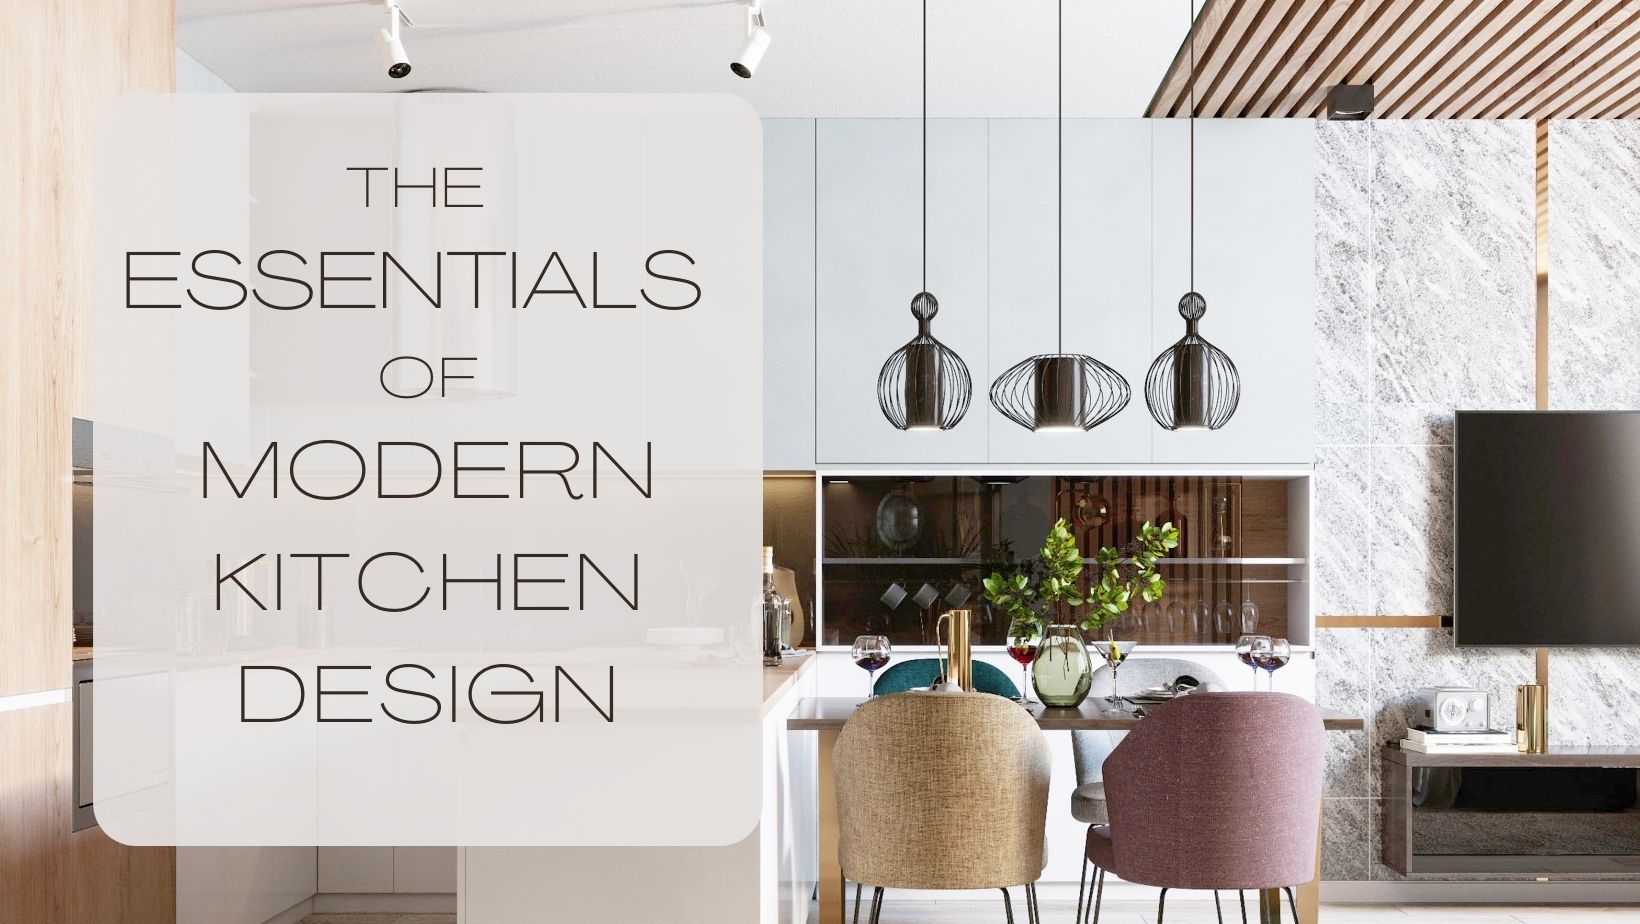 The Essentials of Modern Kitchen Design